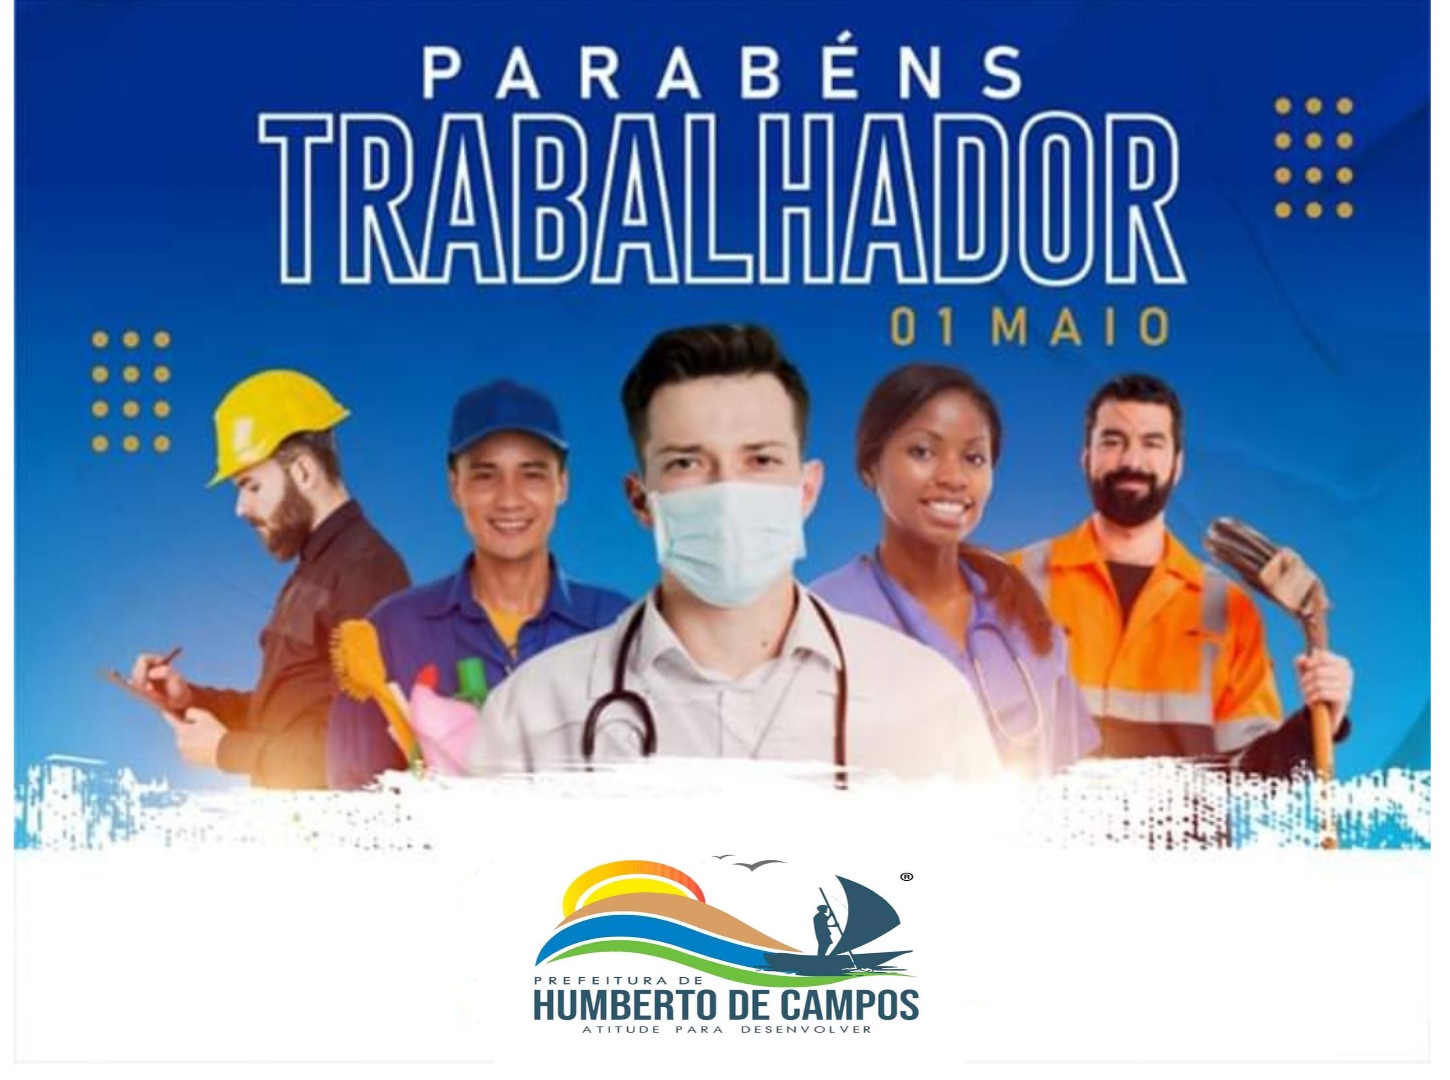 Prefeito de Humberto de Campos emite mensagem em homenagem ao Dia do Trabalhador